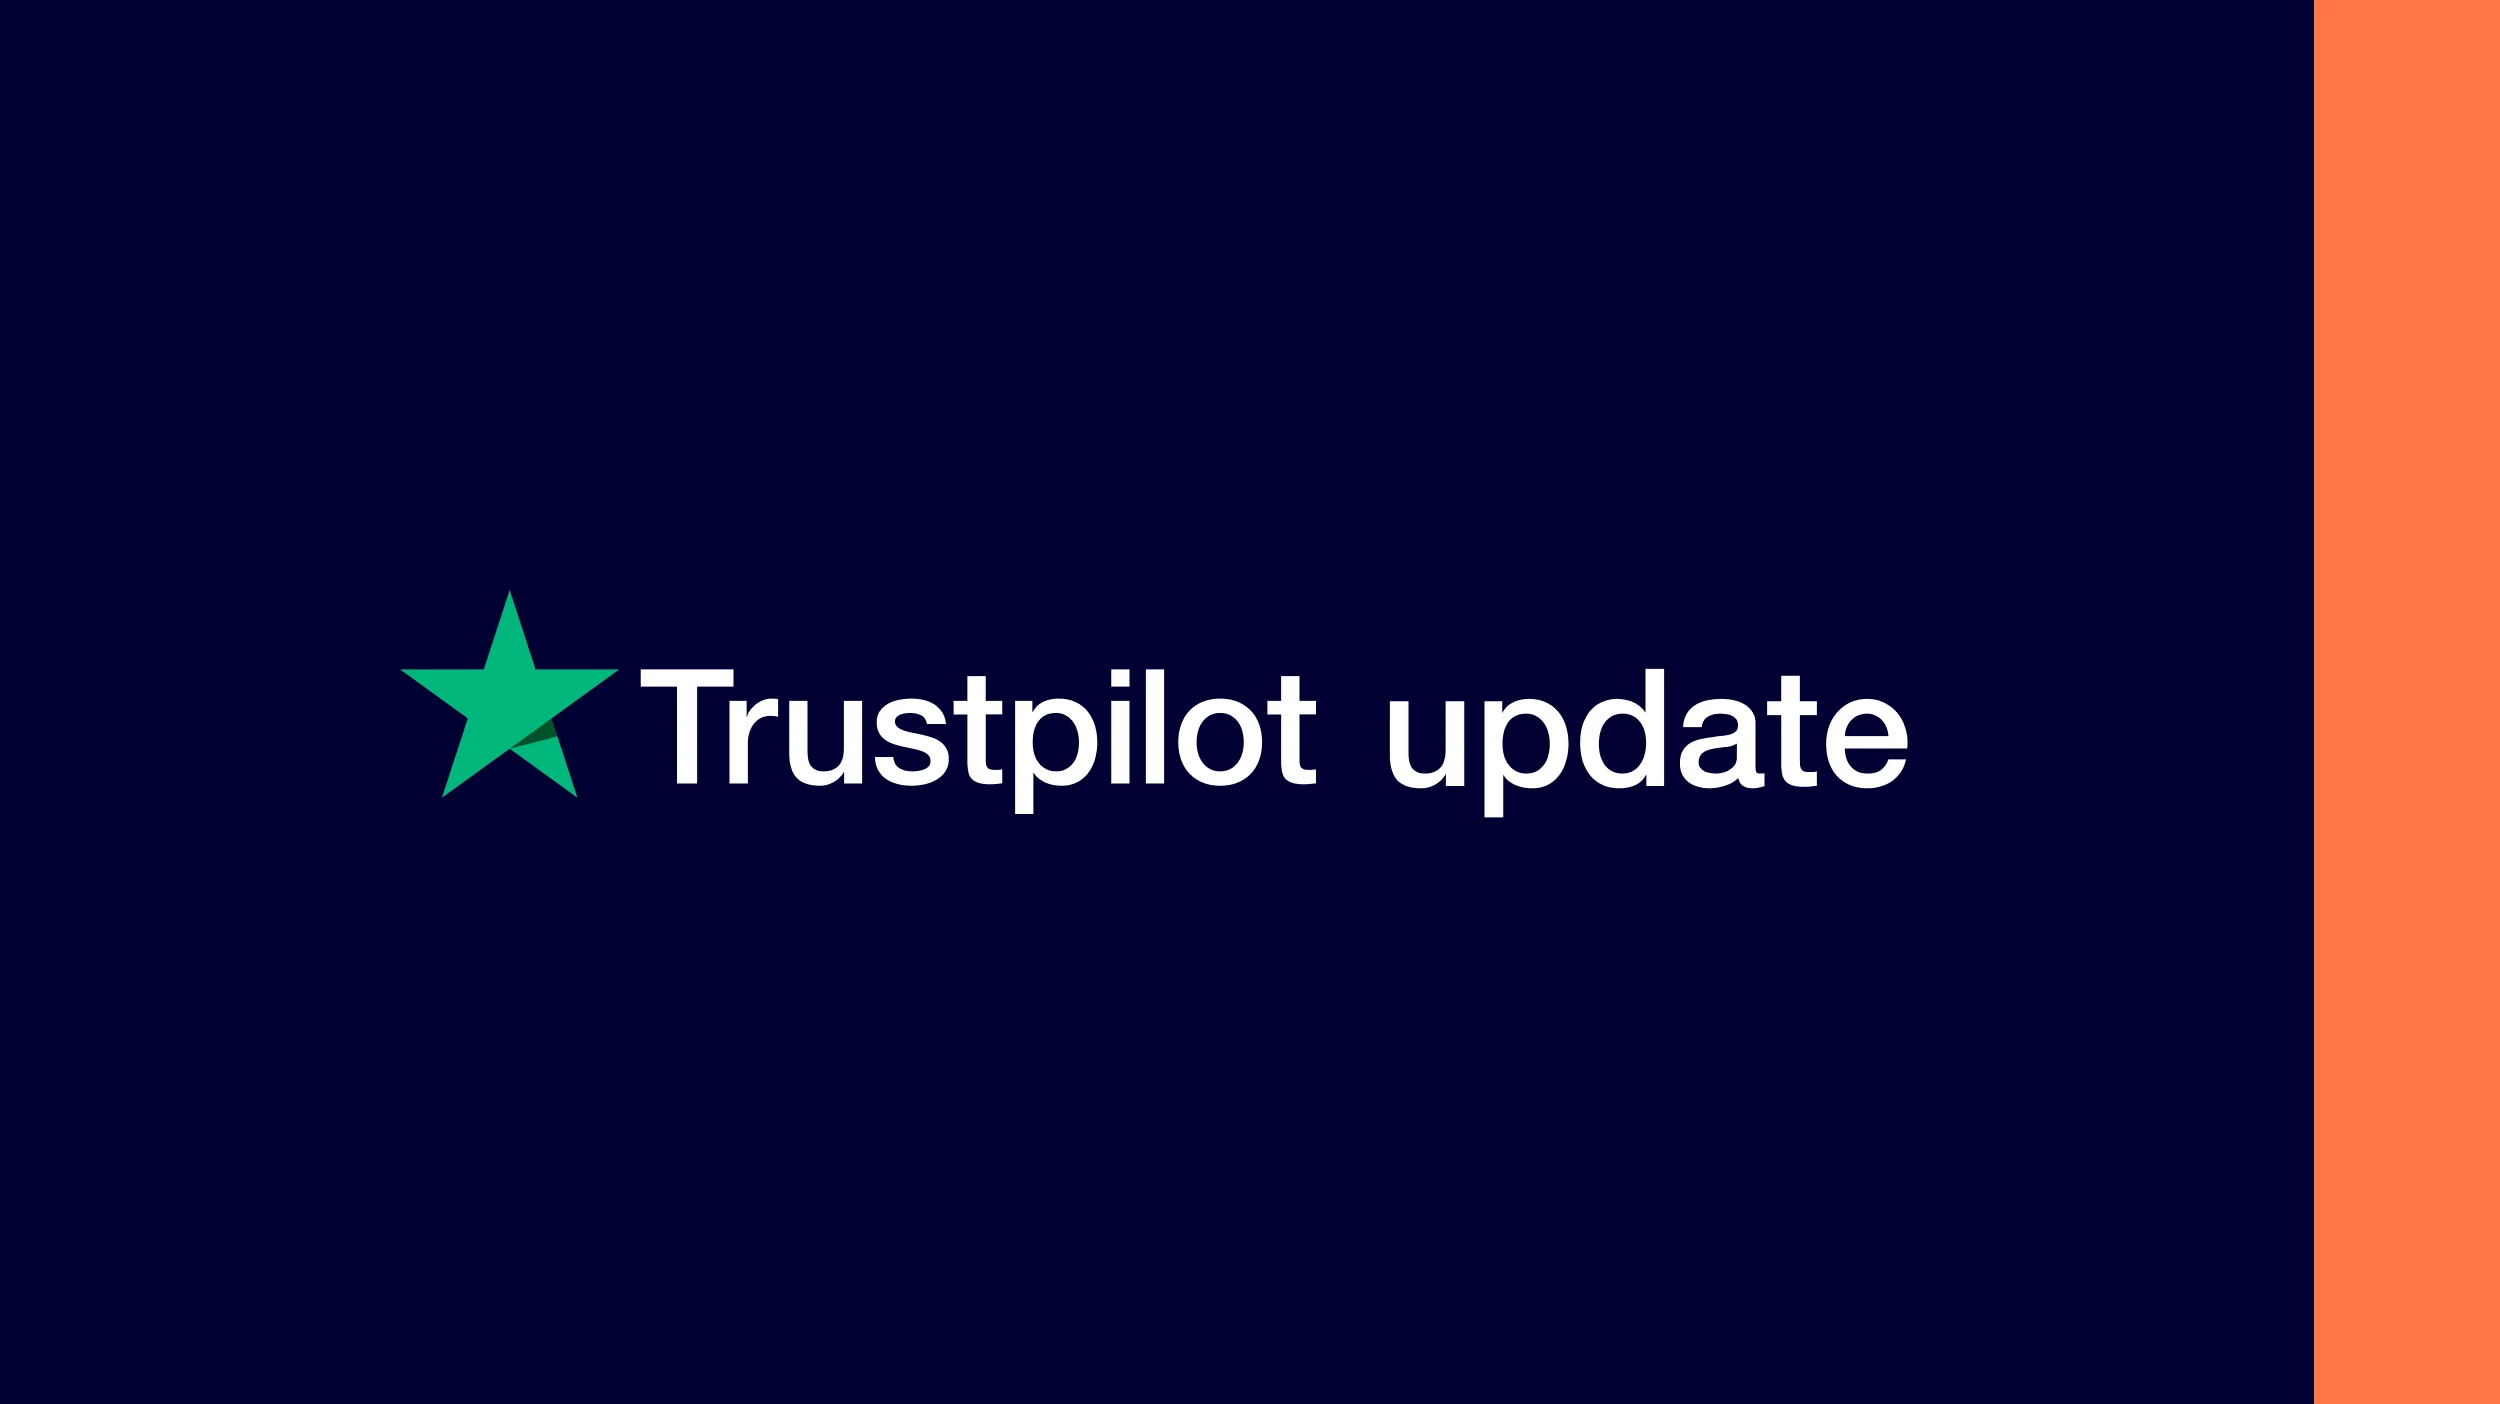 Trustpilot update